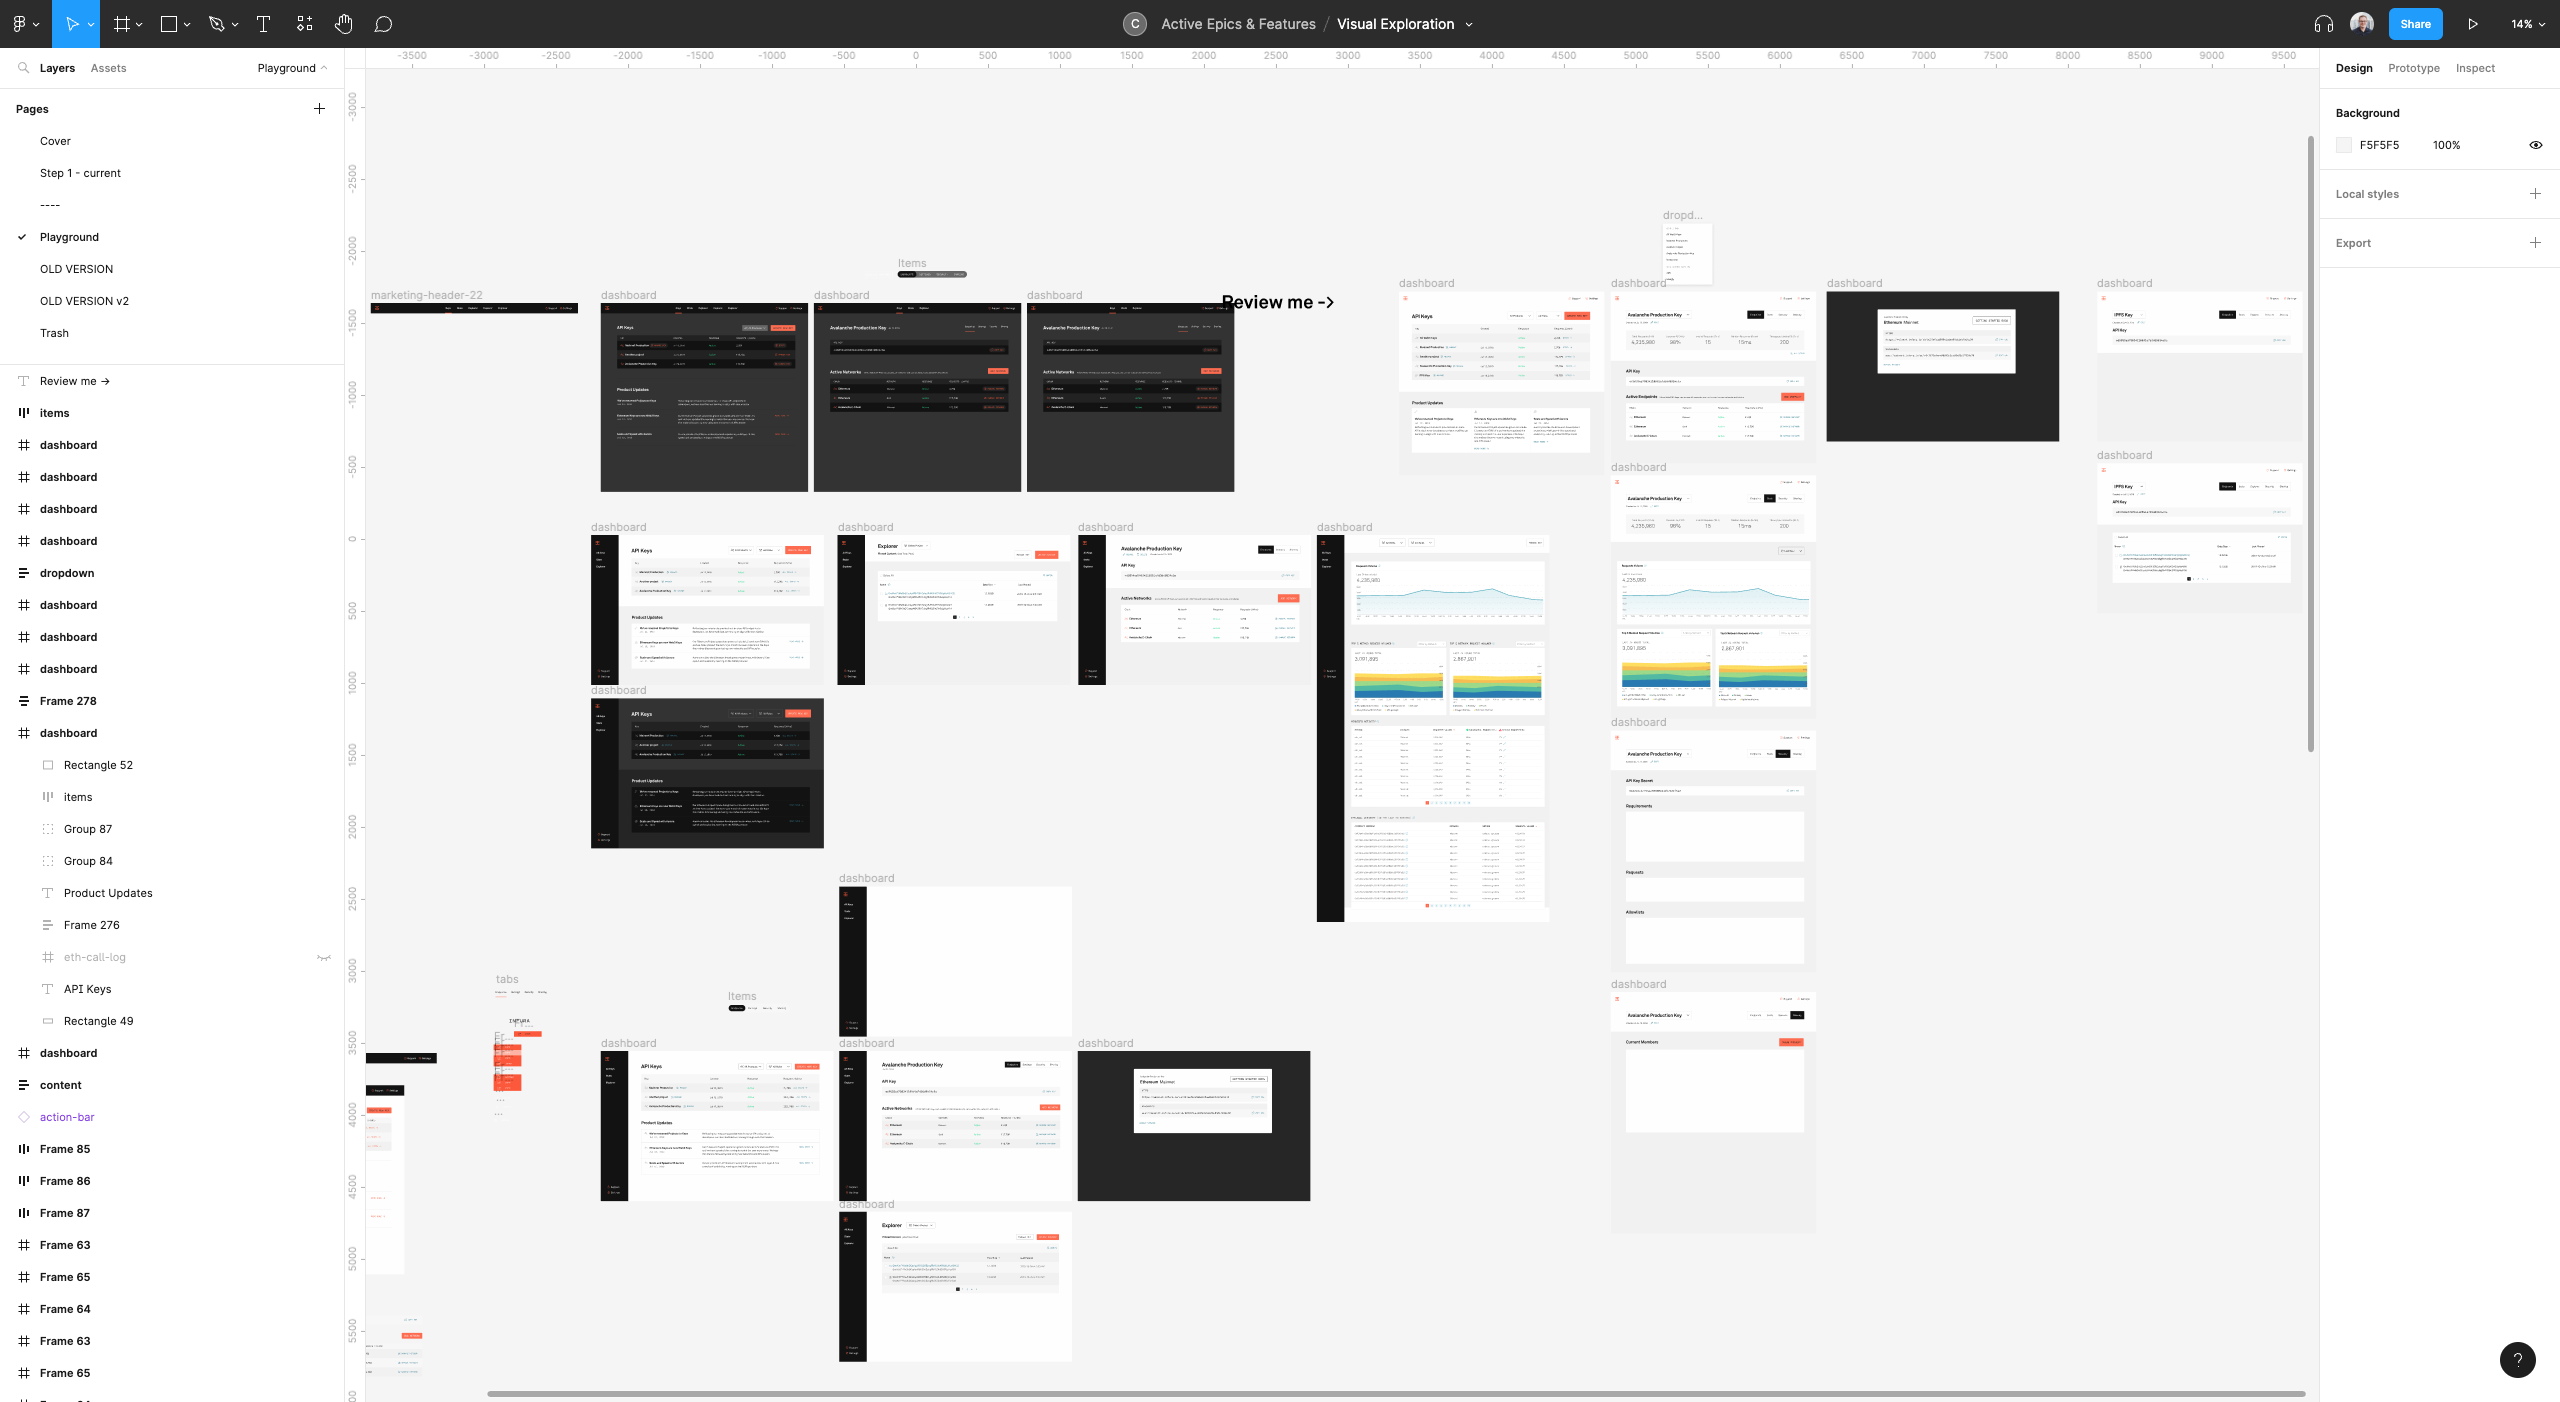 Screenshot of Figma viaual design experimentation